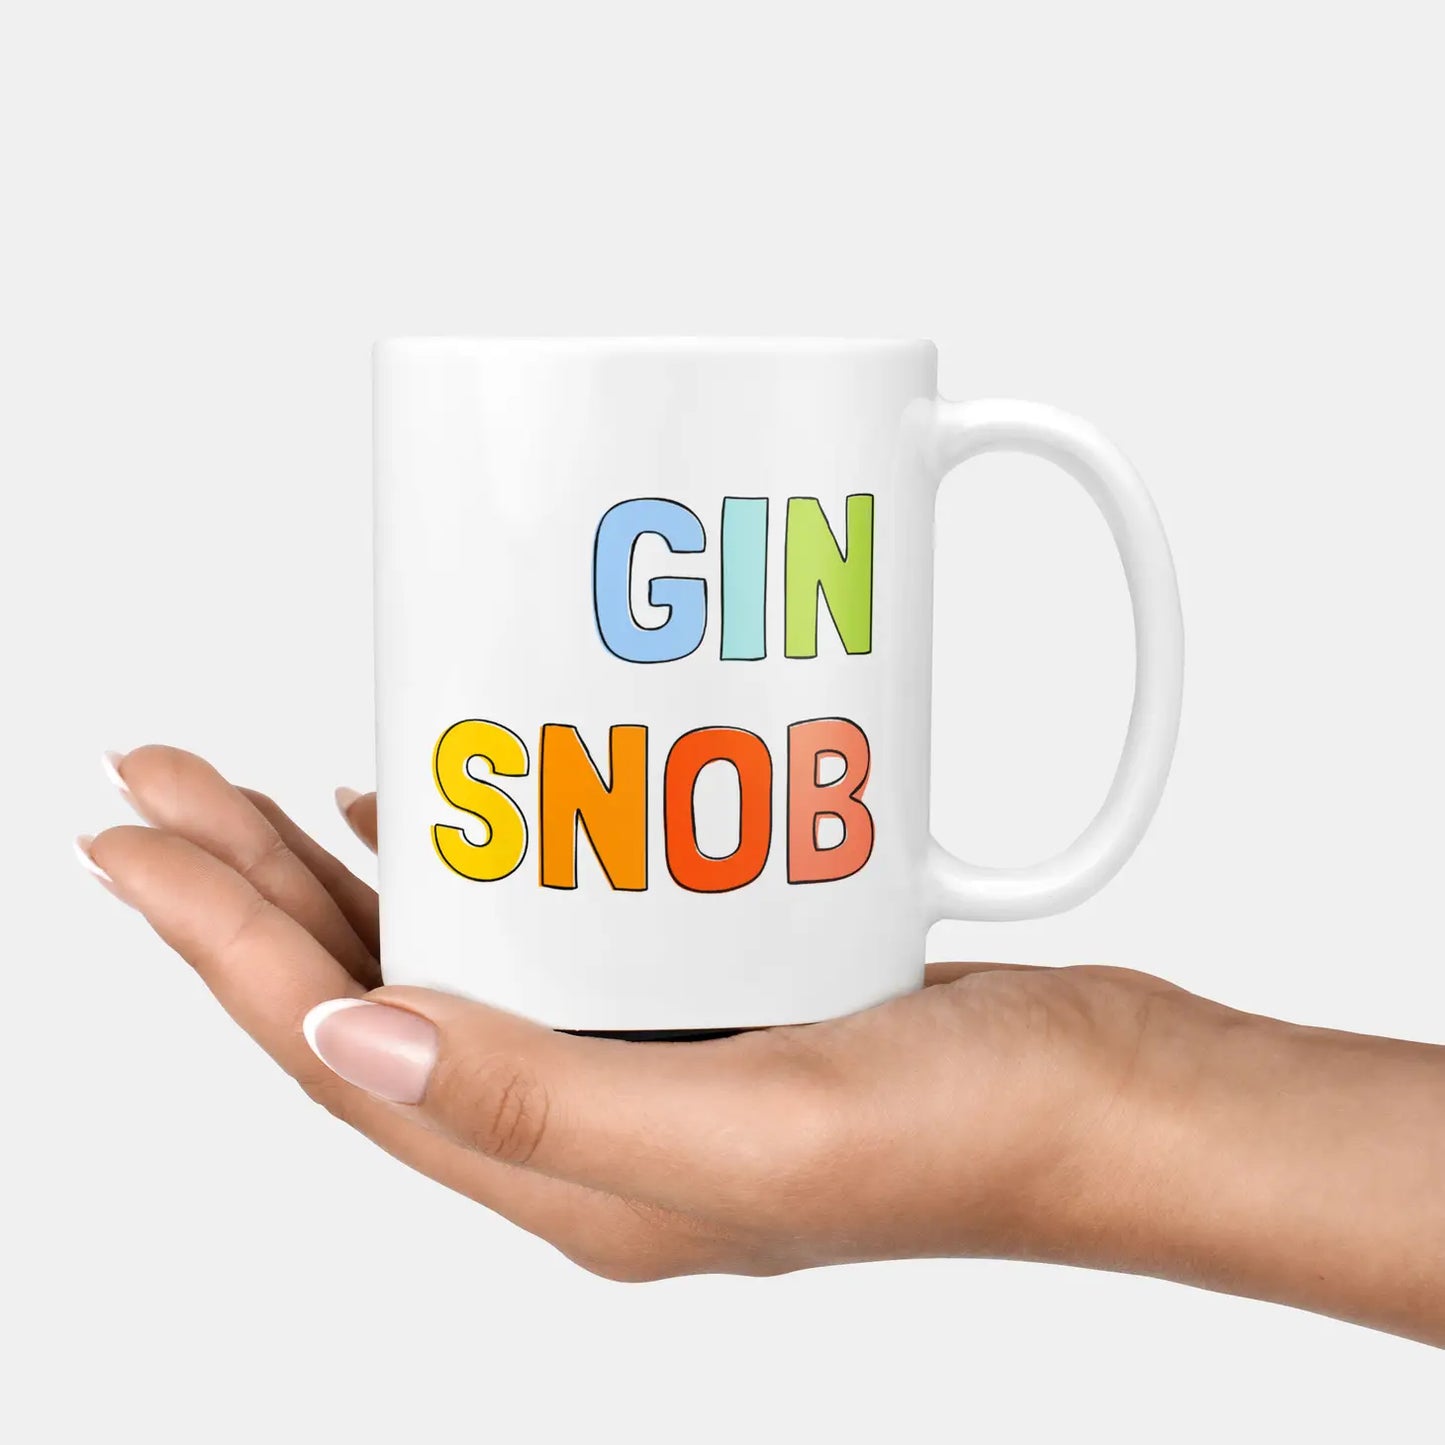 Gin snob ceramic mug